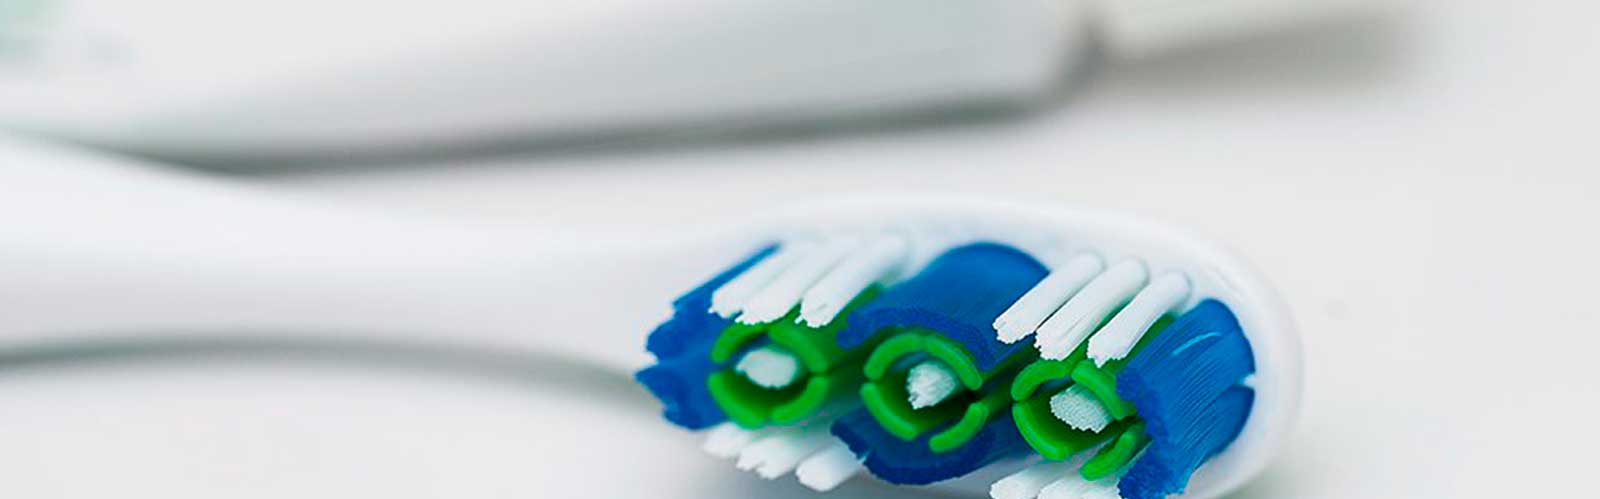 Tipos de pasta de dientes Imagen 1